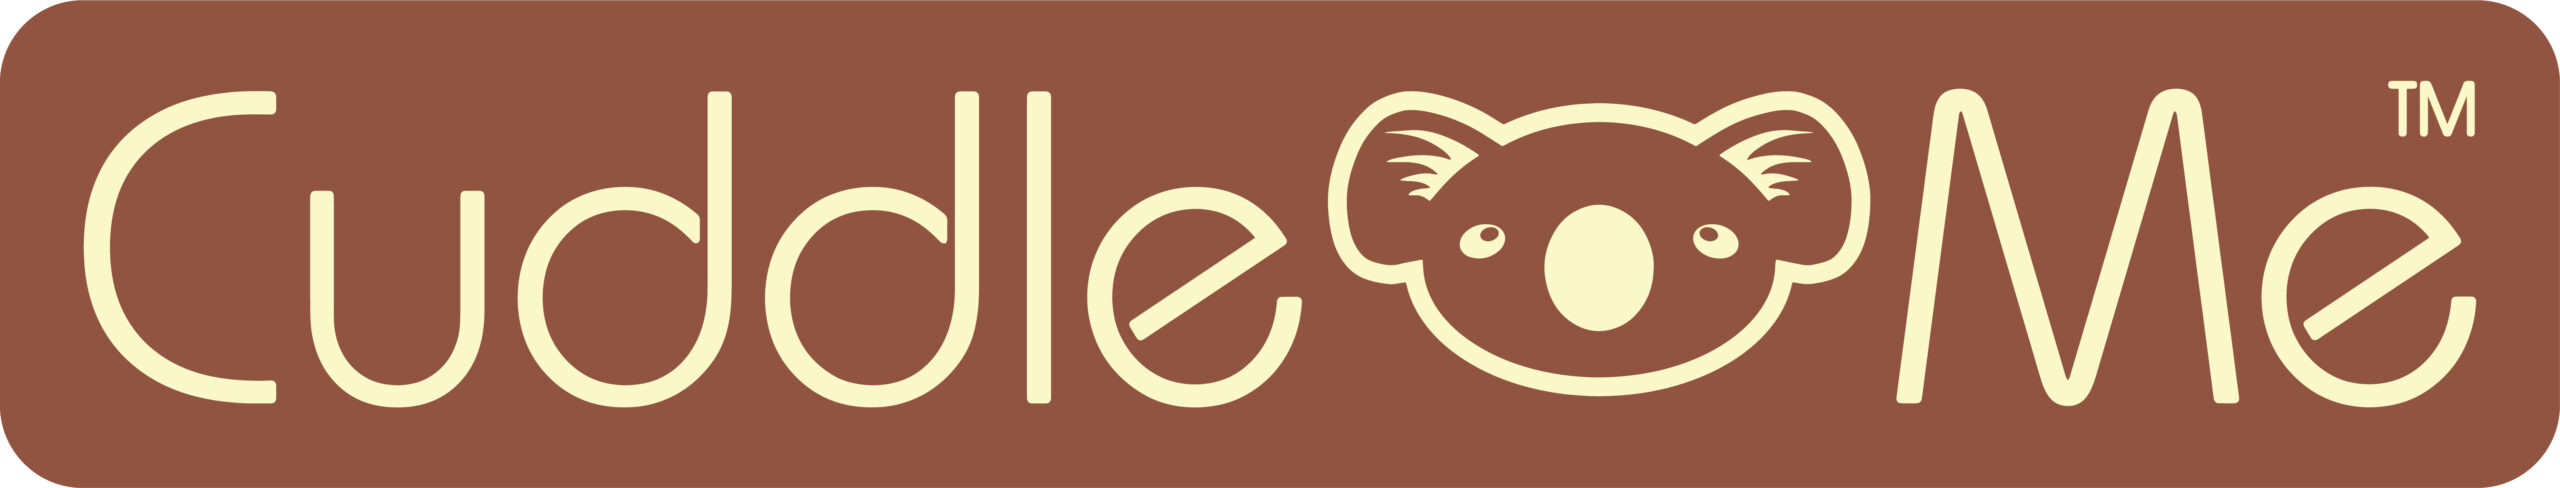 CuddleMe-Logo-Panjang-scaled-1.jpg